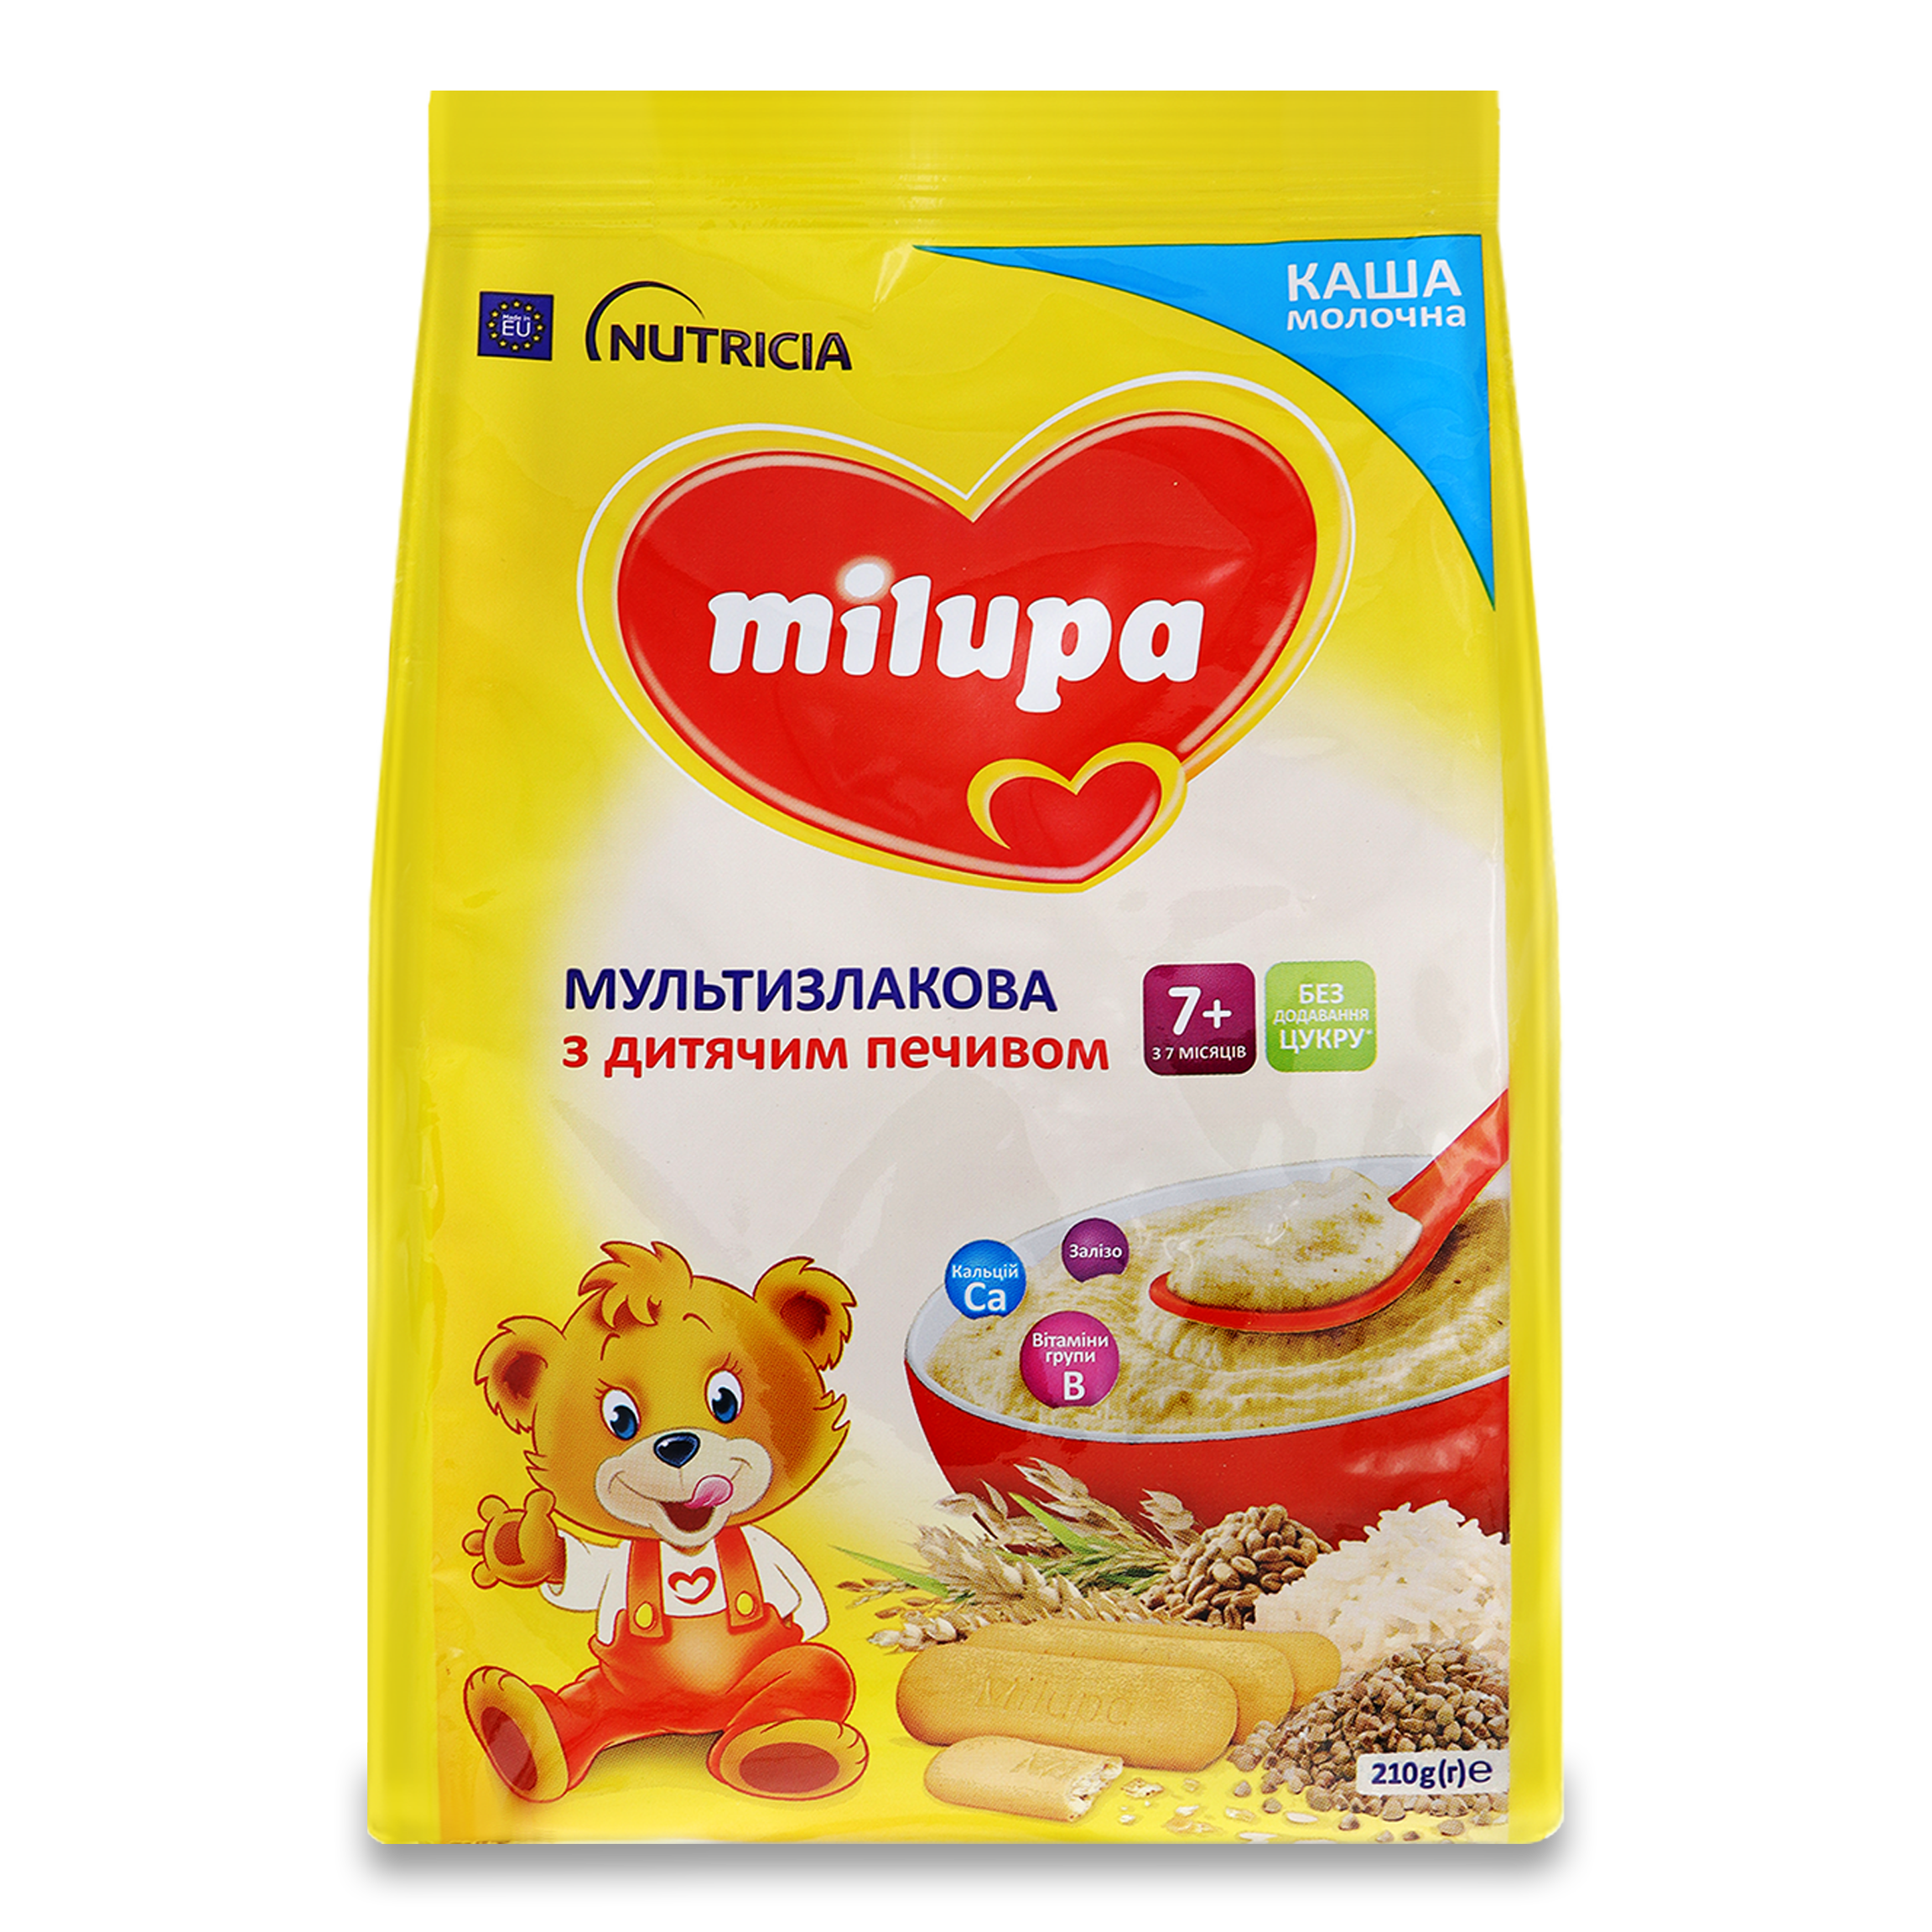 Каша Milupa молочна мультизлакова печиво 210г